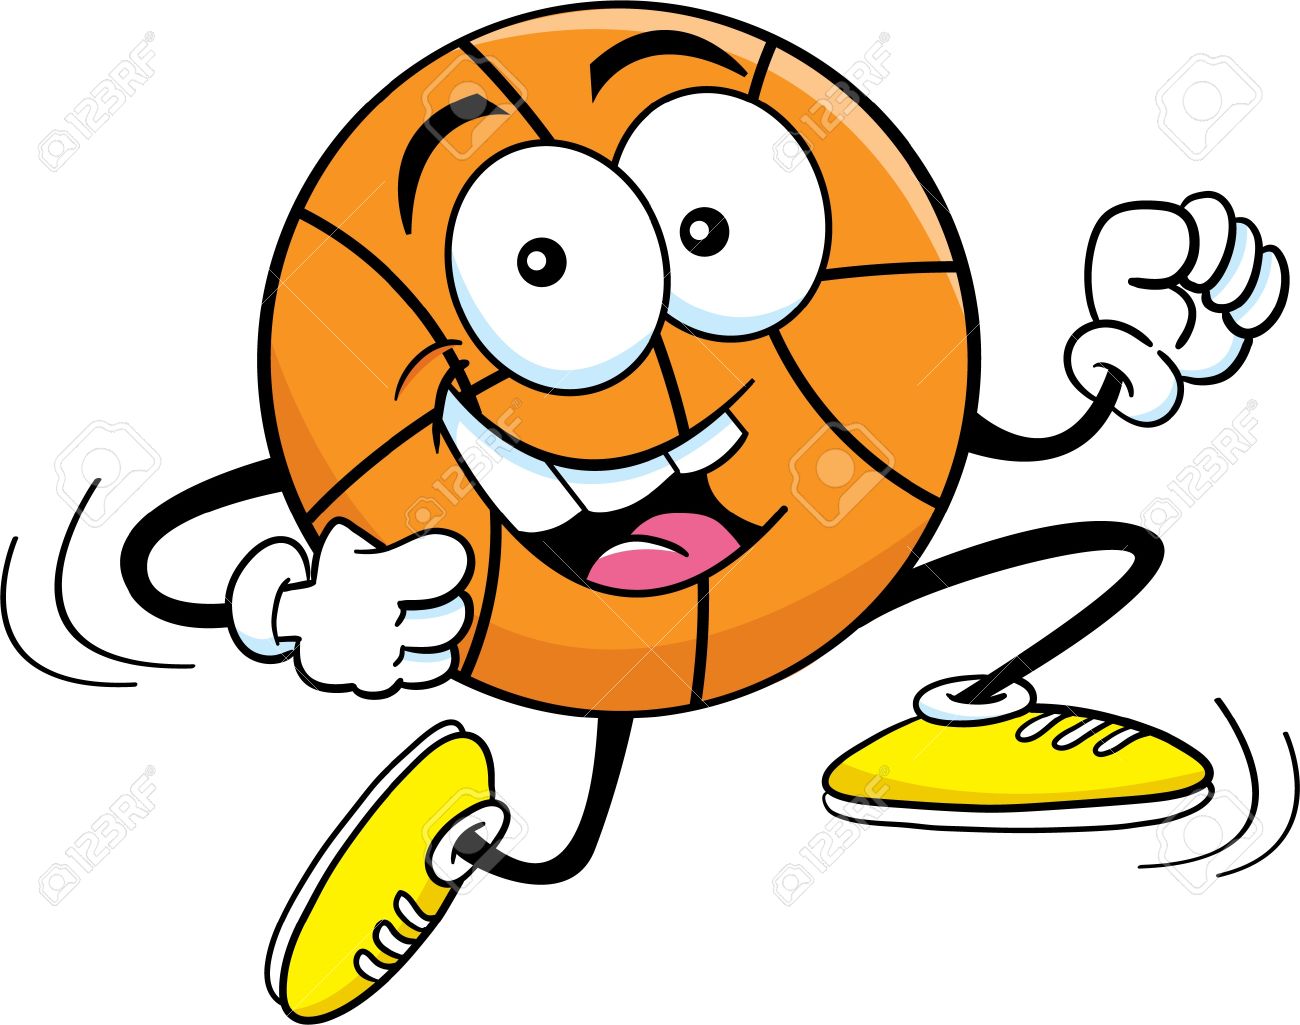 16452738-cartoon-illustration-of-a-basketball-running